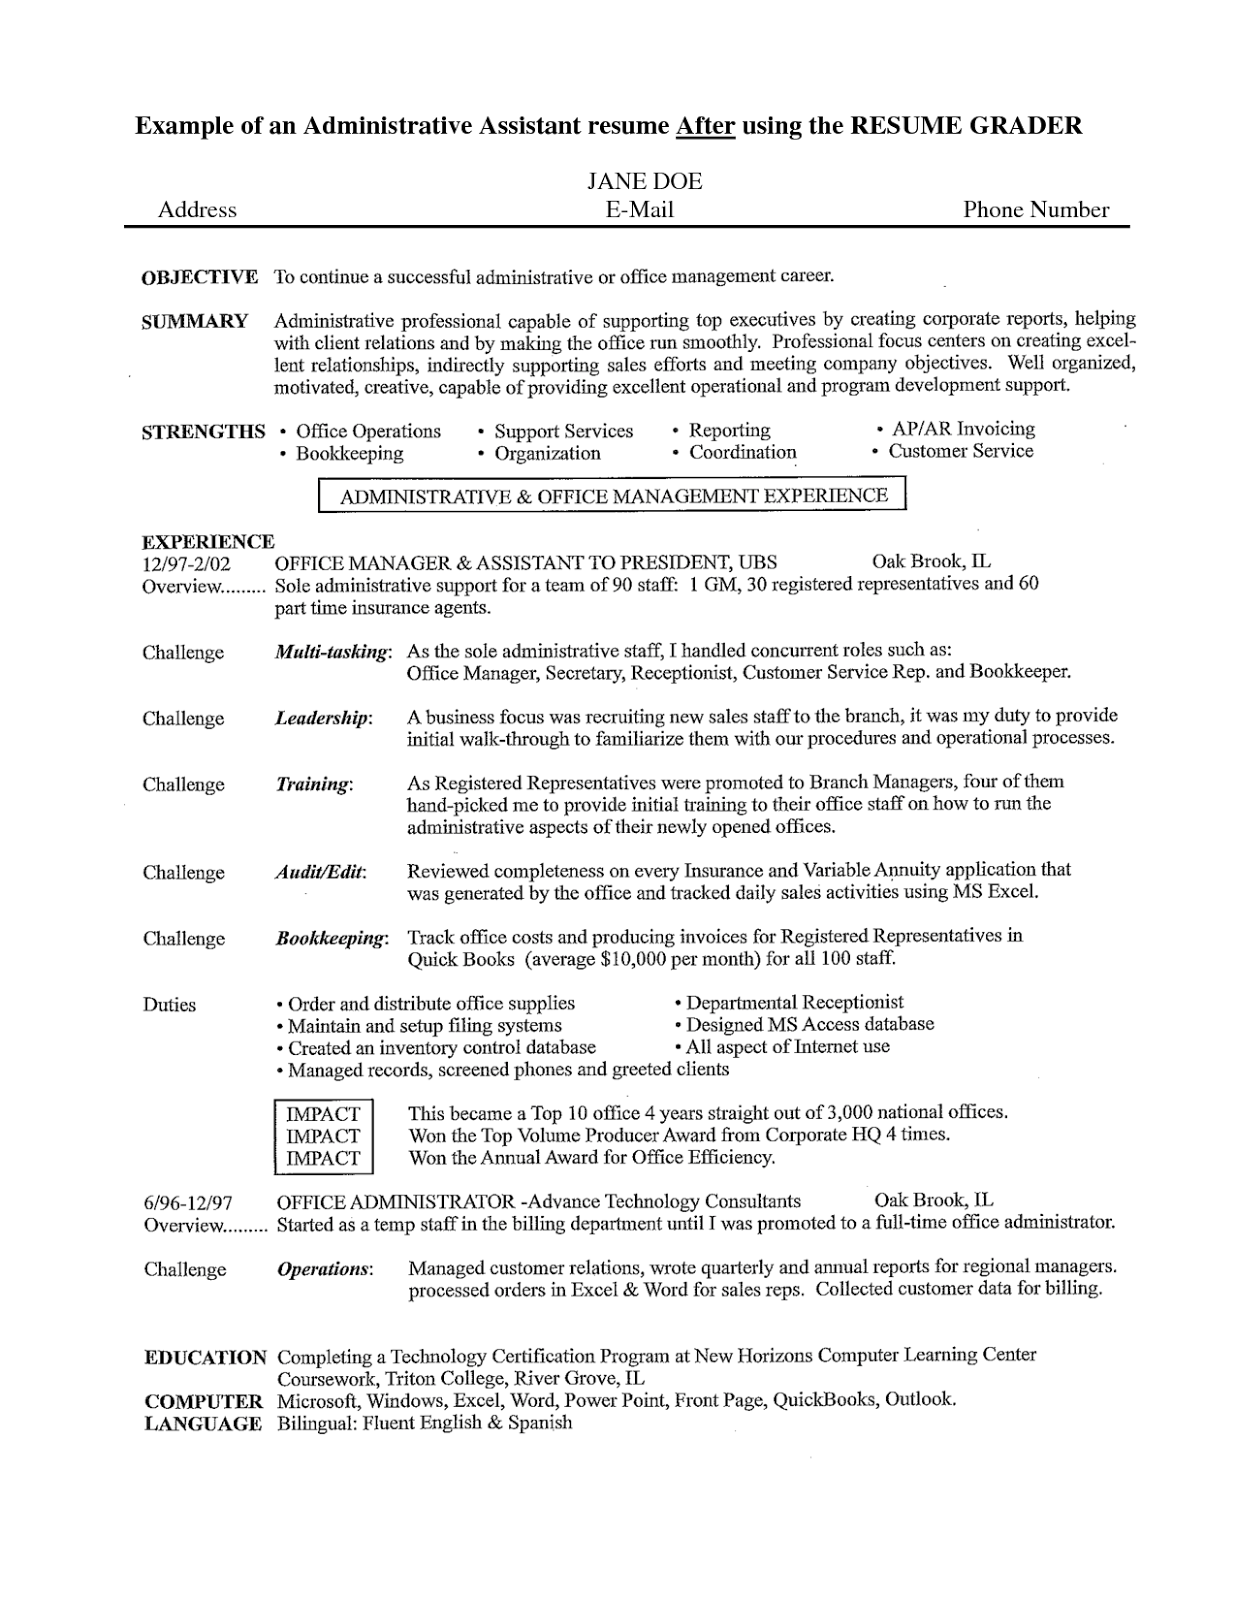 Functional resume for office clerk